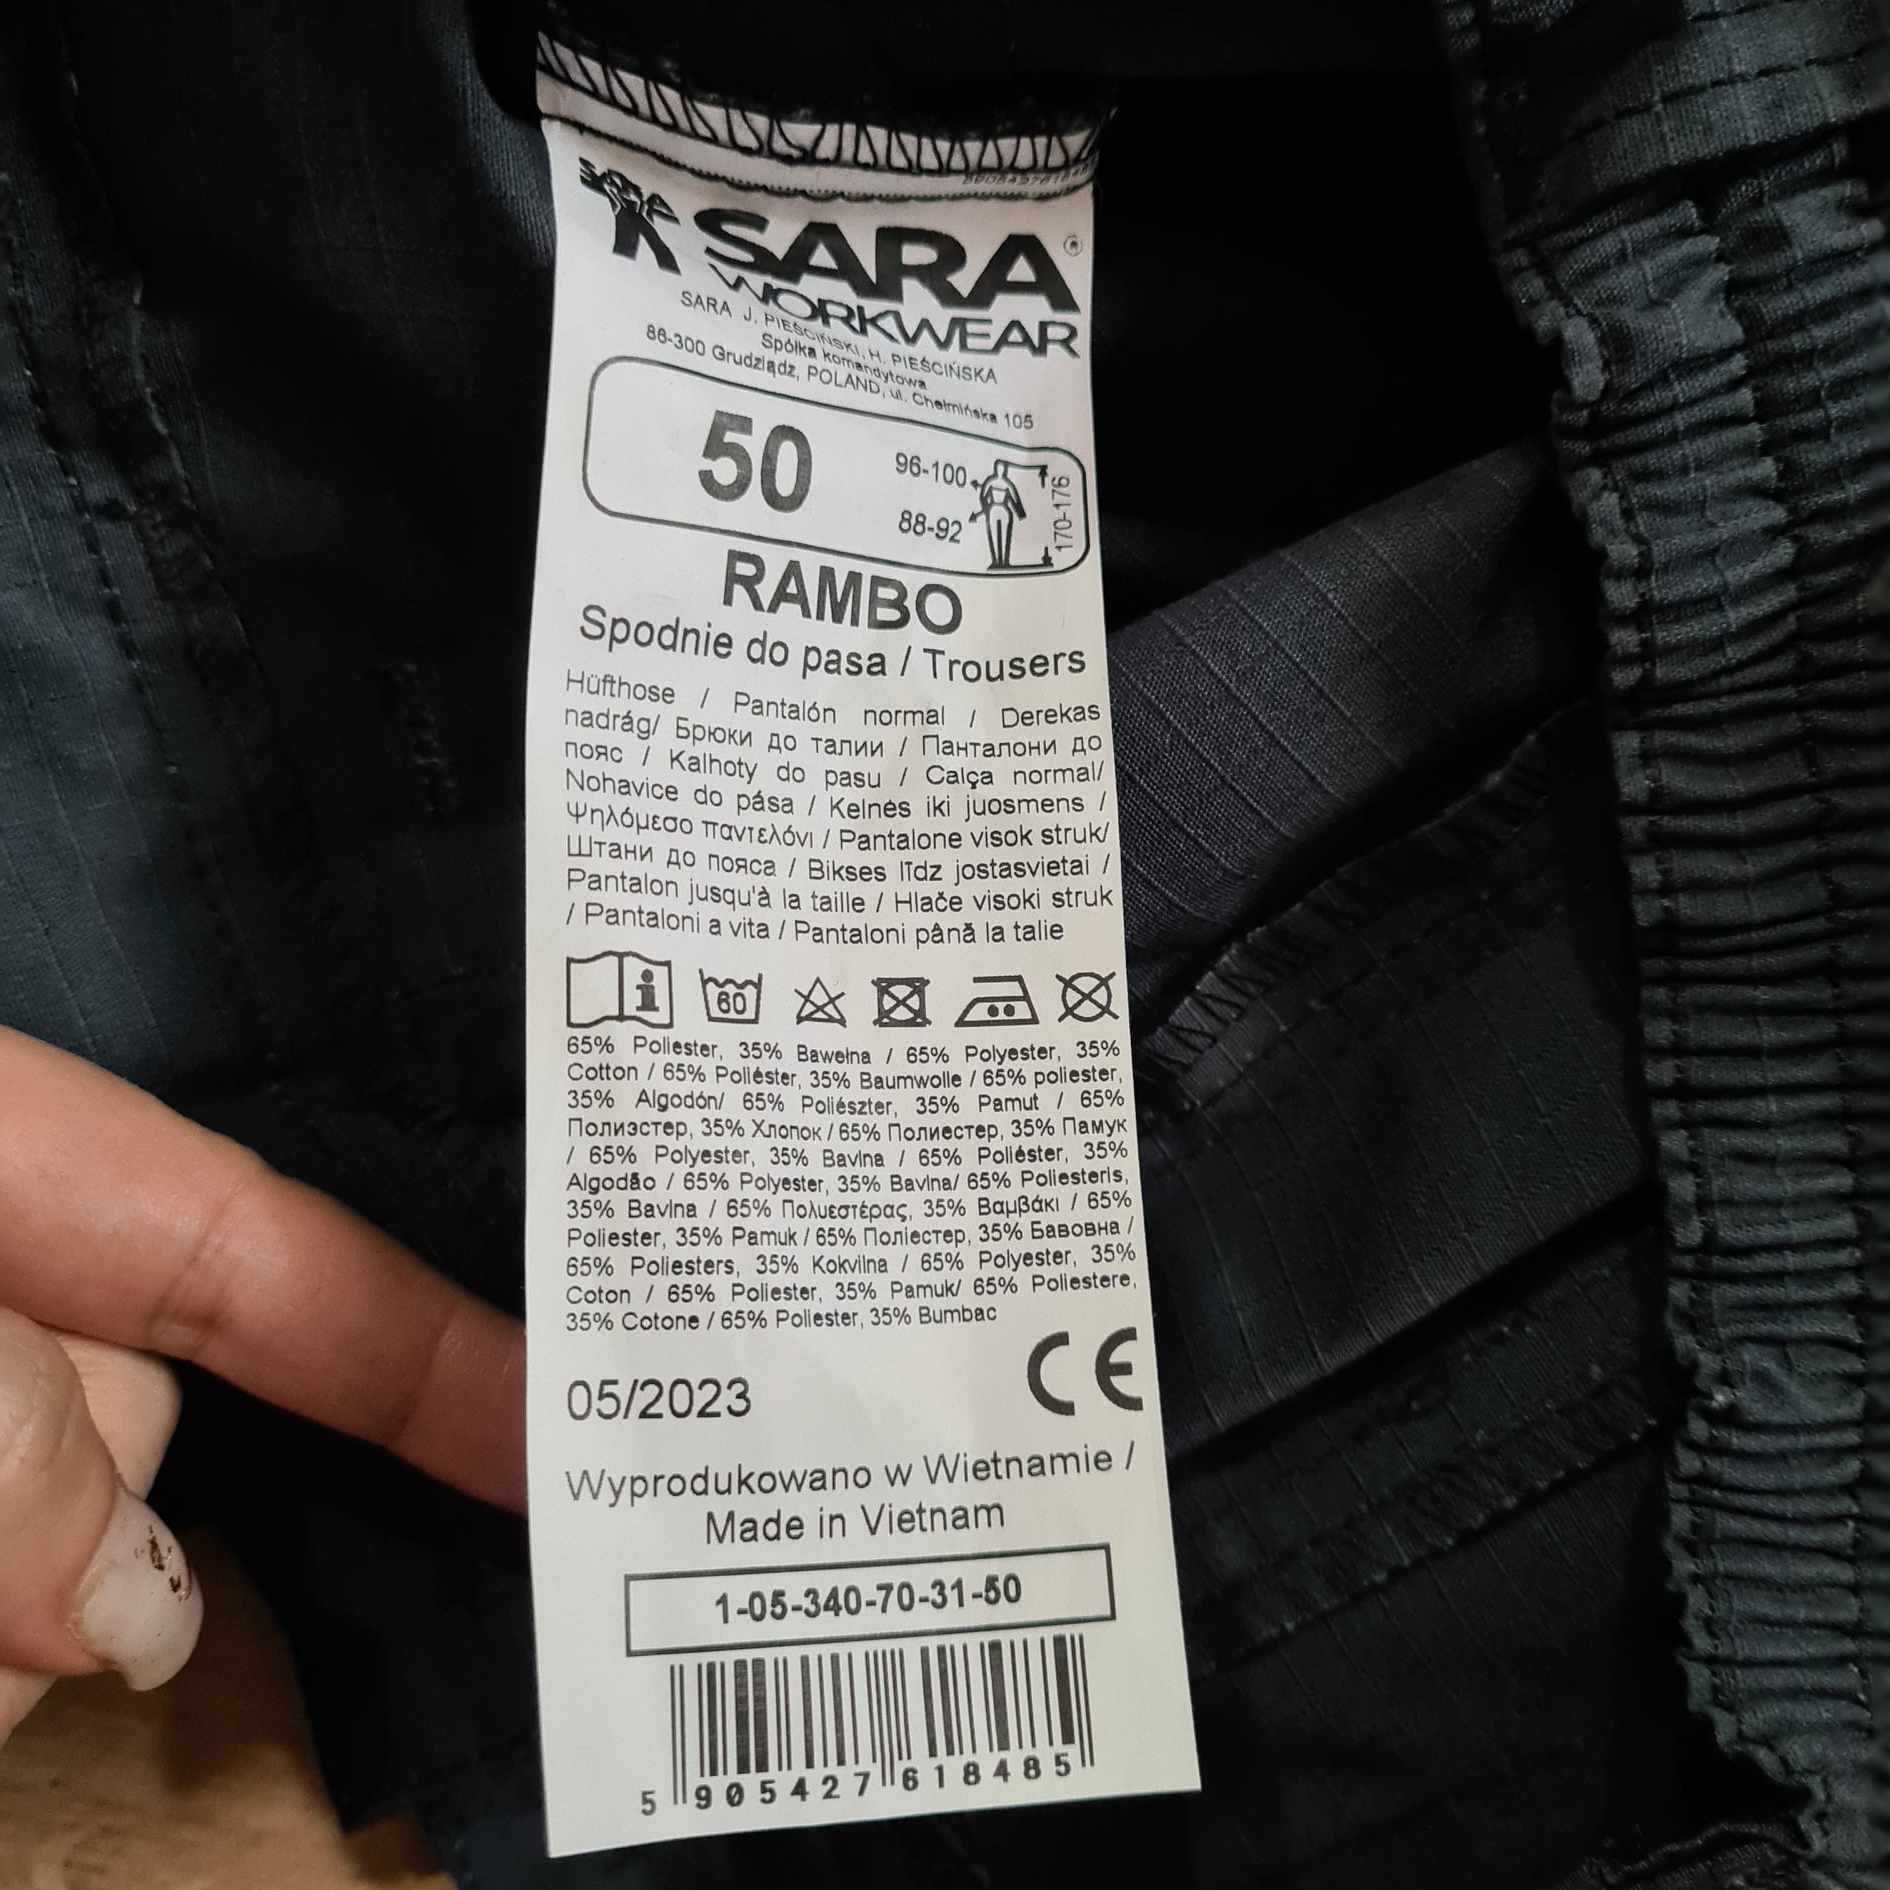 Sara Workwear Rambo spodnie męskie otwory na nakolanniki 50